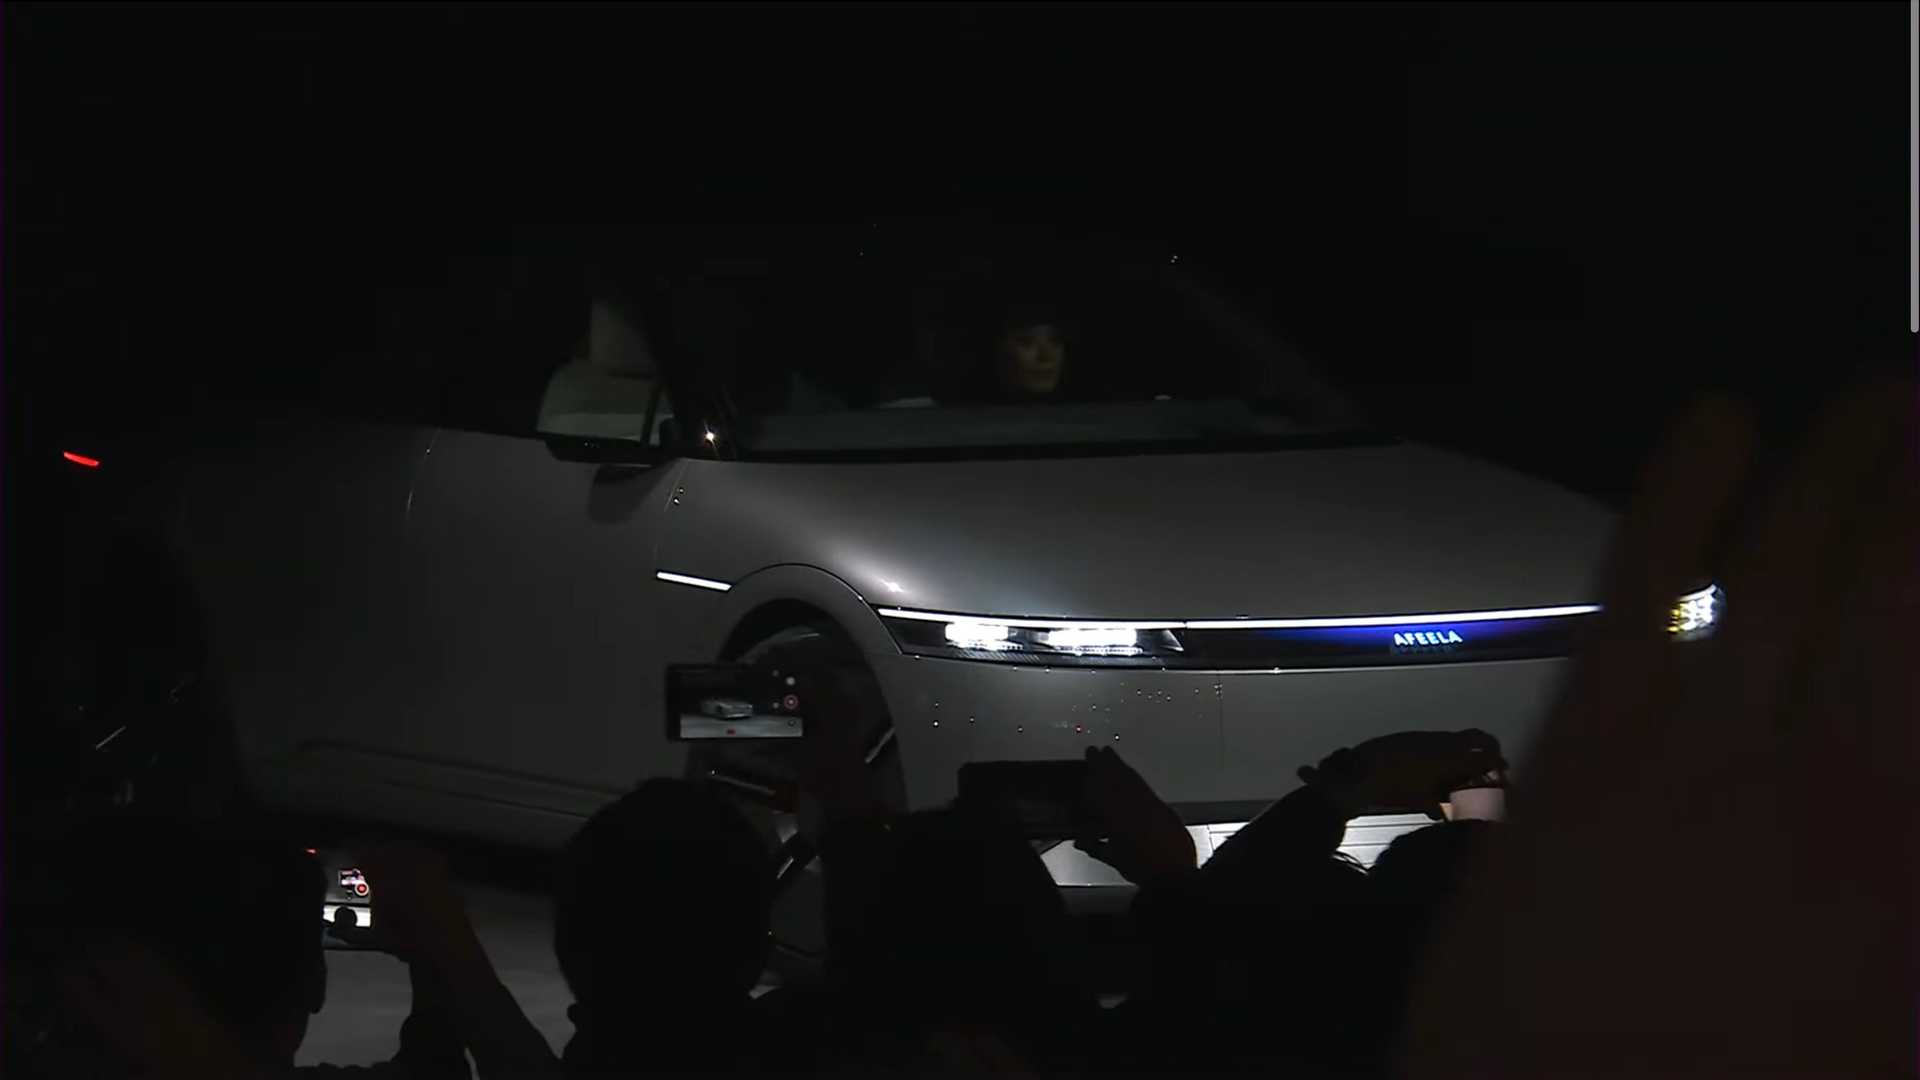 سوني تطلق علامتها التجارية الجديدة للسيارات رسمياً بالتعاون مع هوندا 30